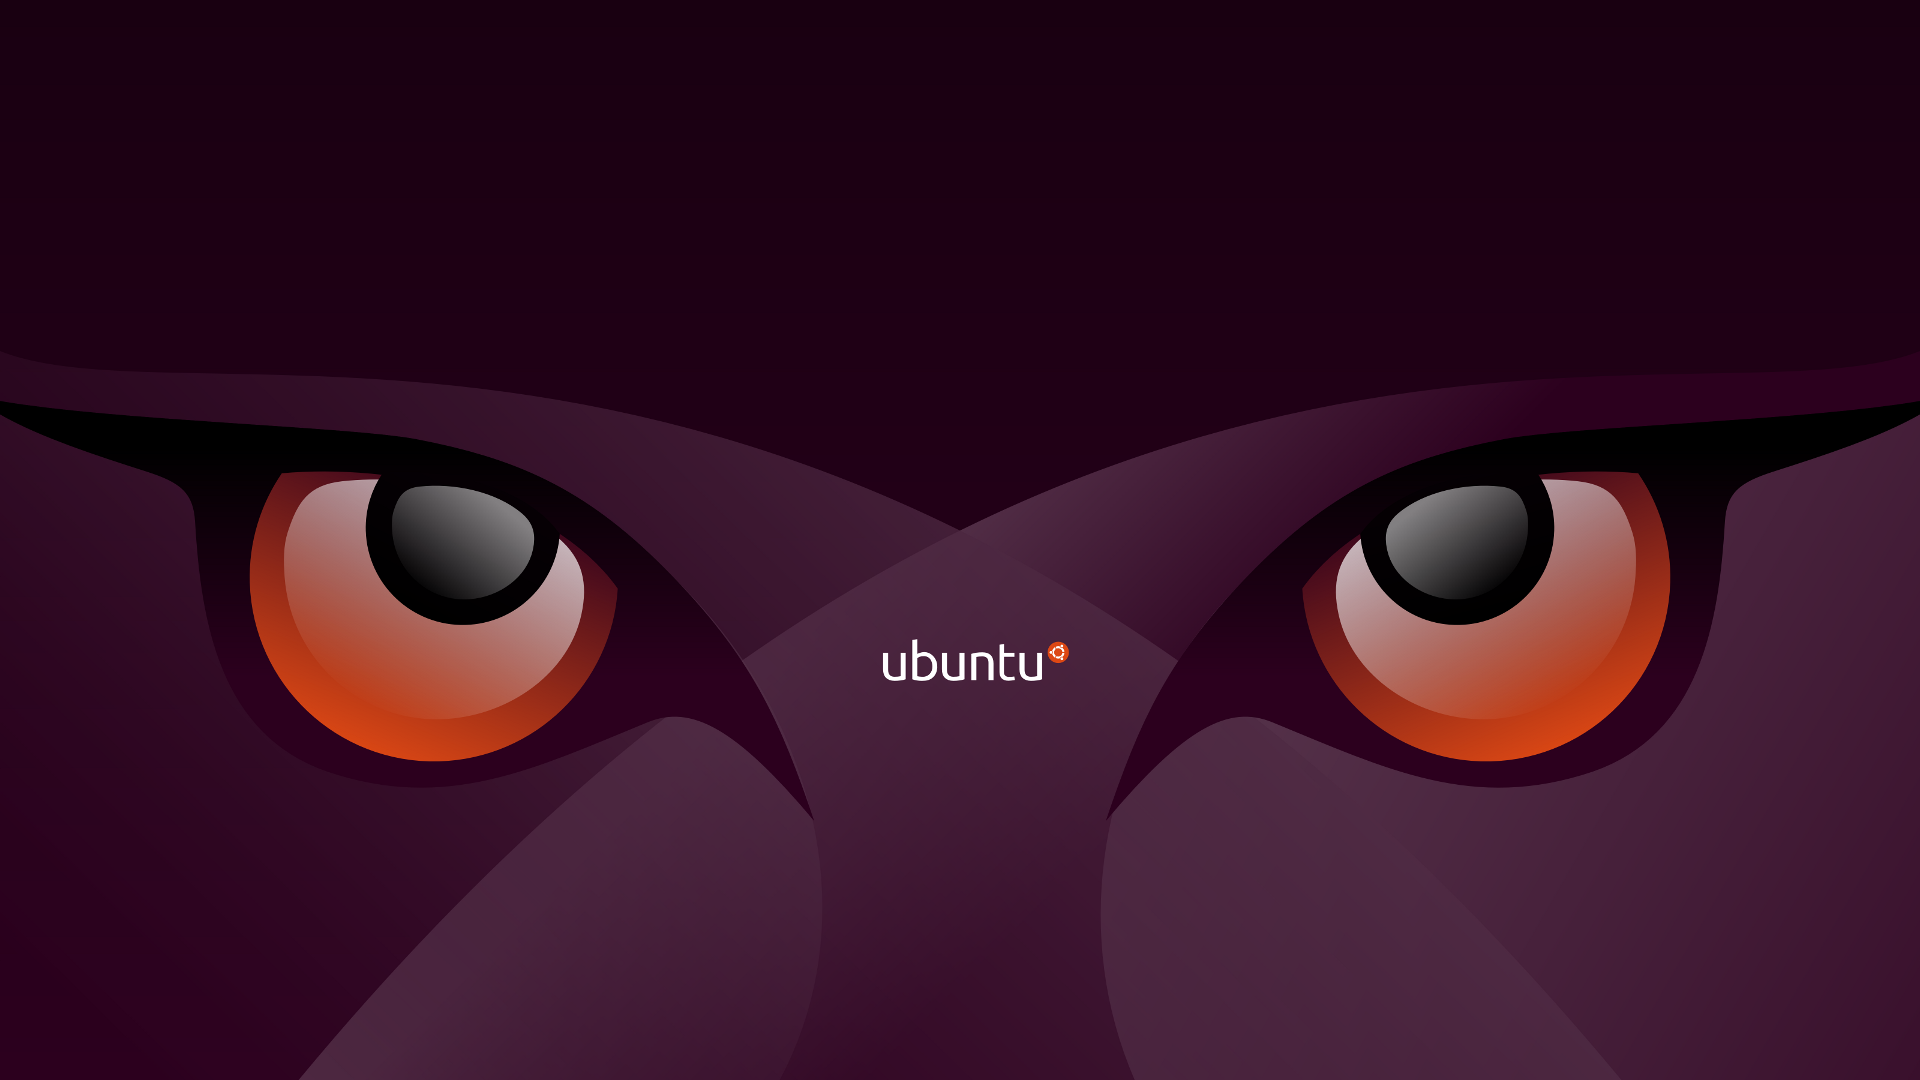 Ubuntu Wallpapers HD Desktop | PixelsTalk.Net